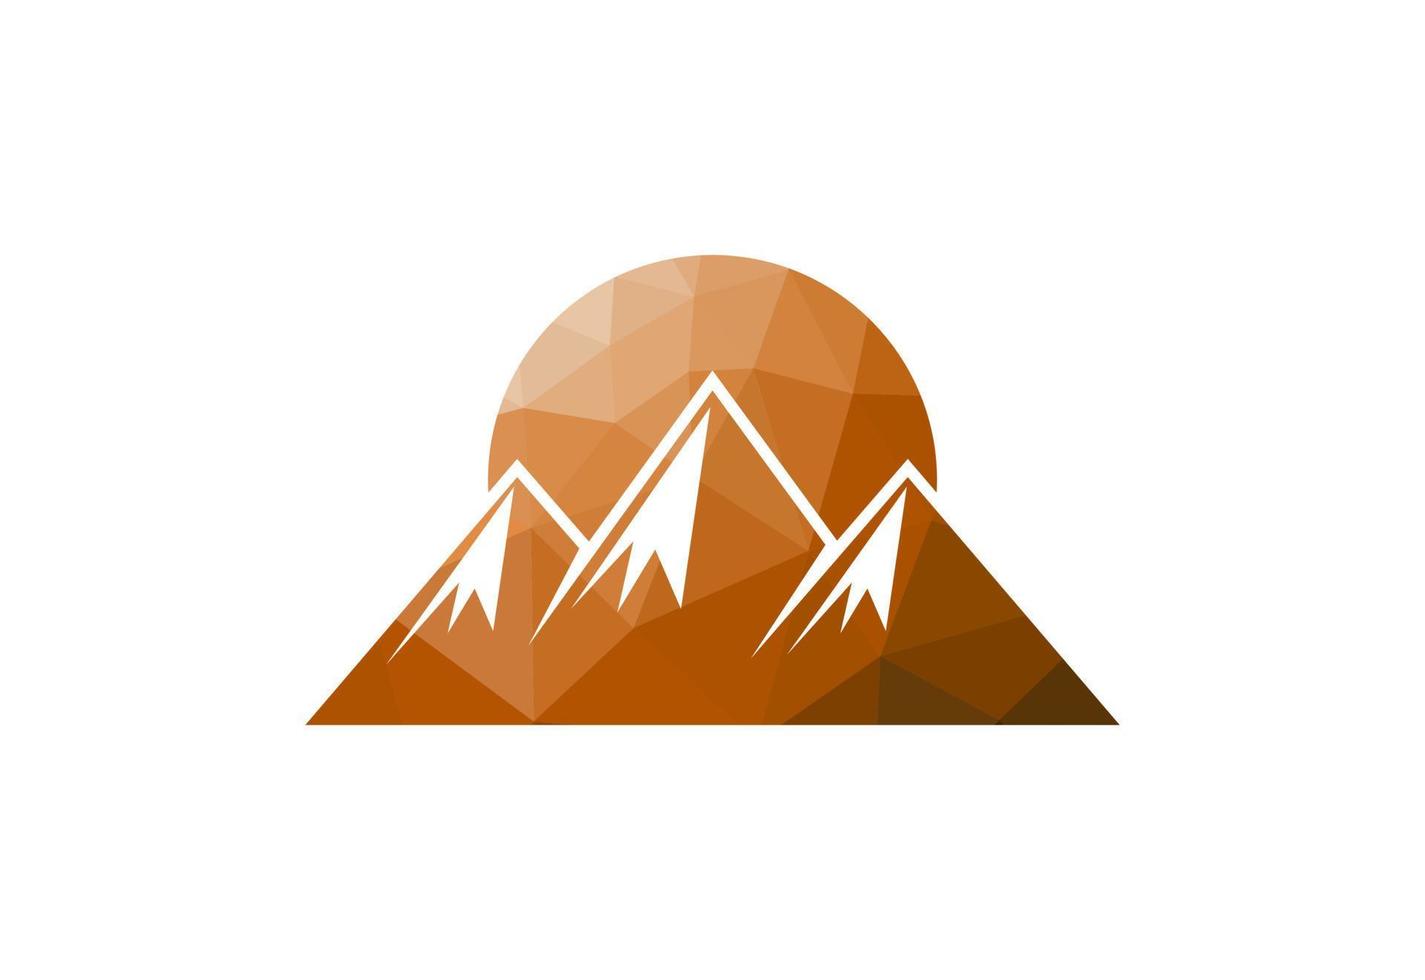 Basso poli e montagna picco vertice logo disegno, vettore illustrazione